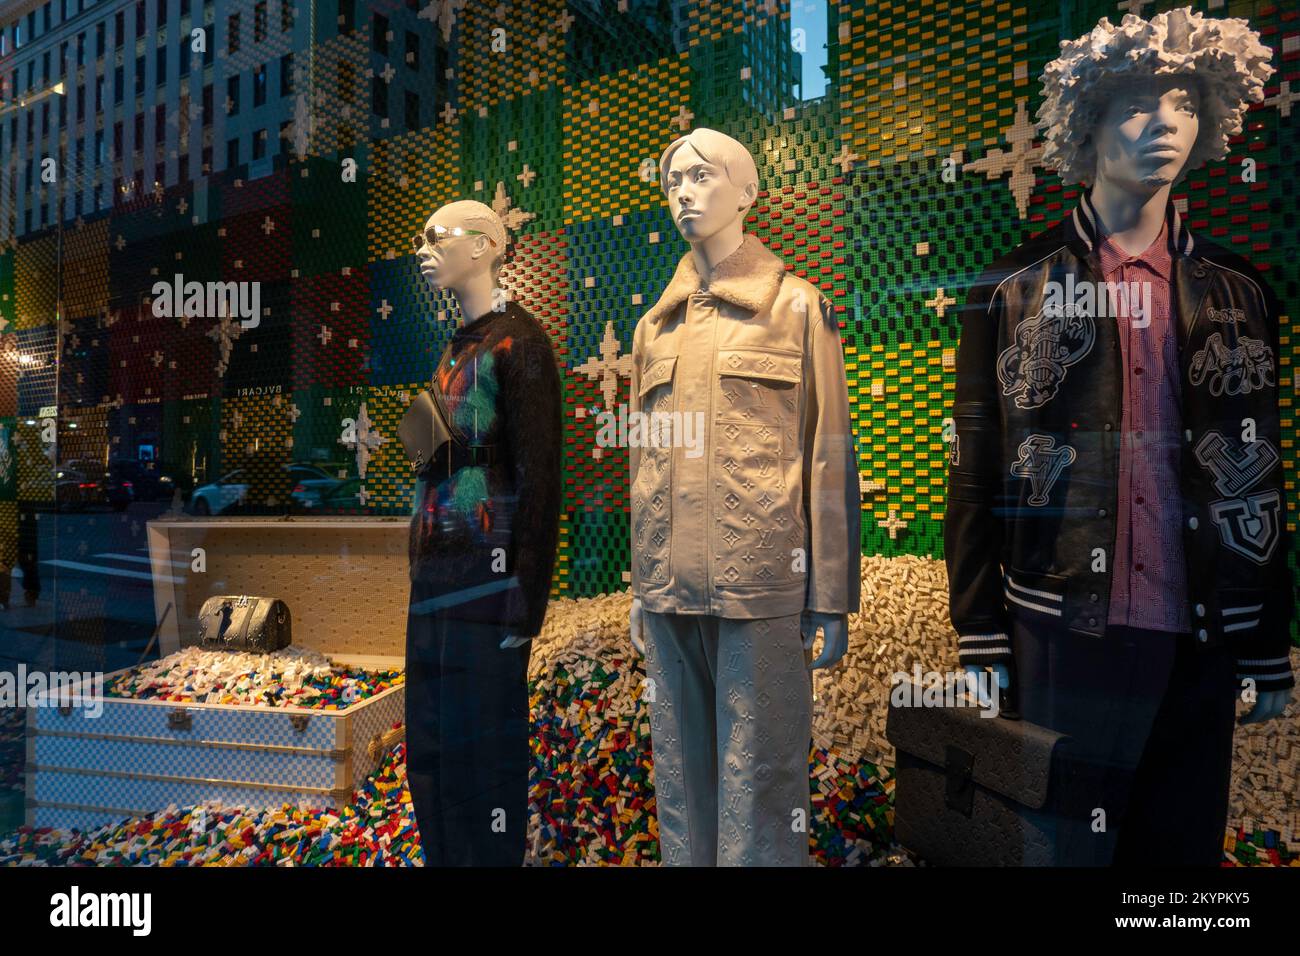 Louis Vuitton fenêtre de vacances à Fifth Avenue et 57th Street, NYC, USA 2022 Banque D'Images